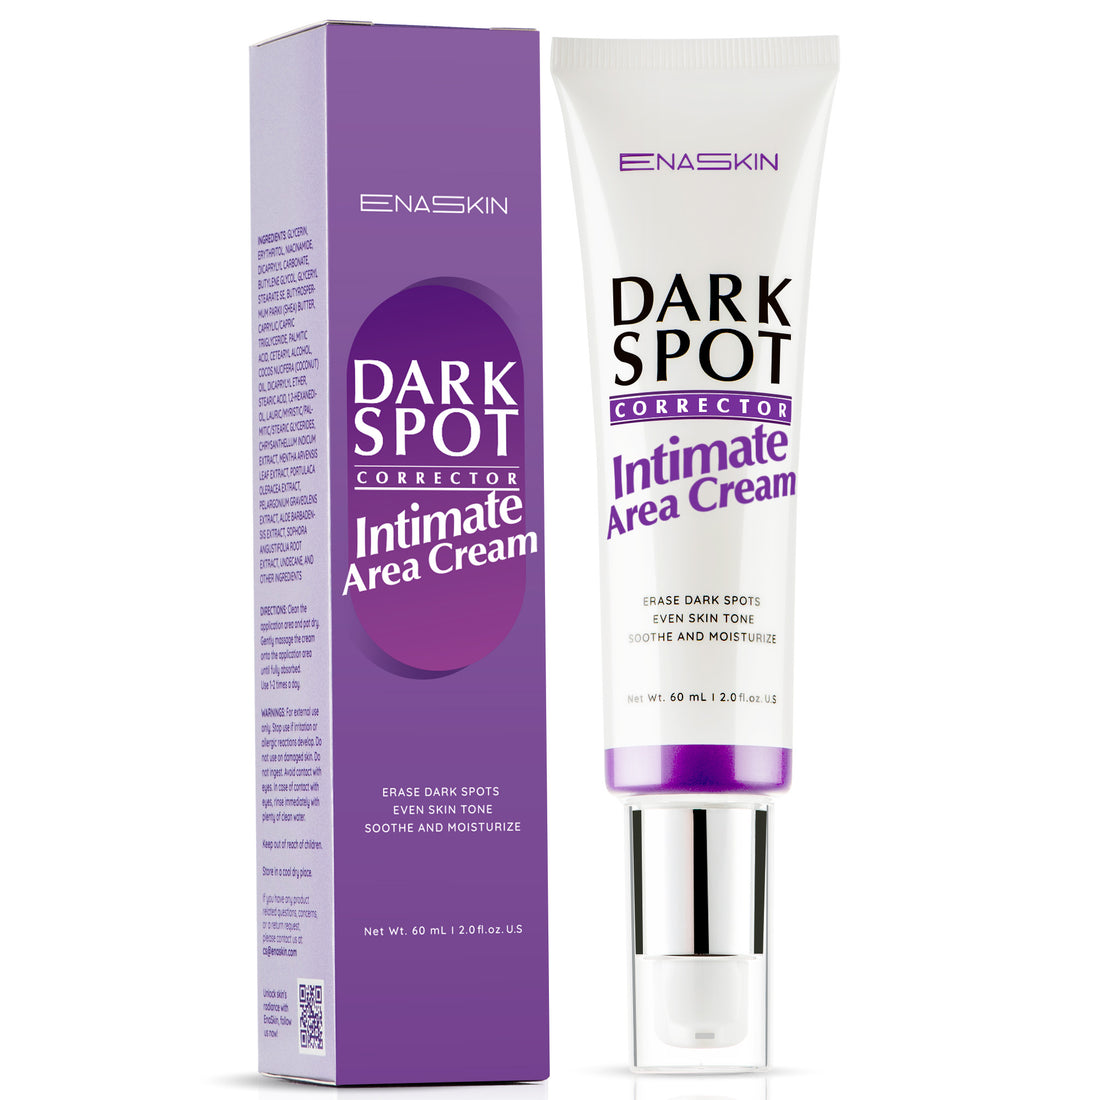 Dark Spot Remover Cream for Intimate Area